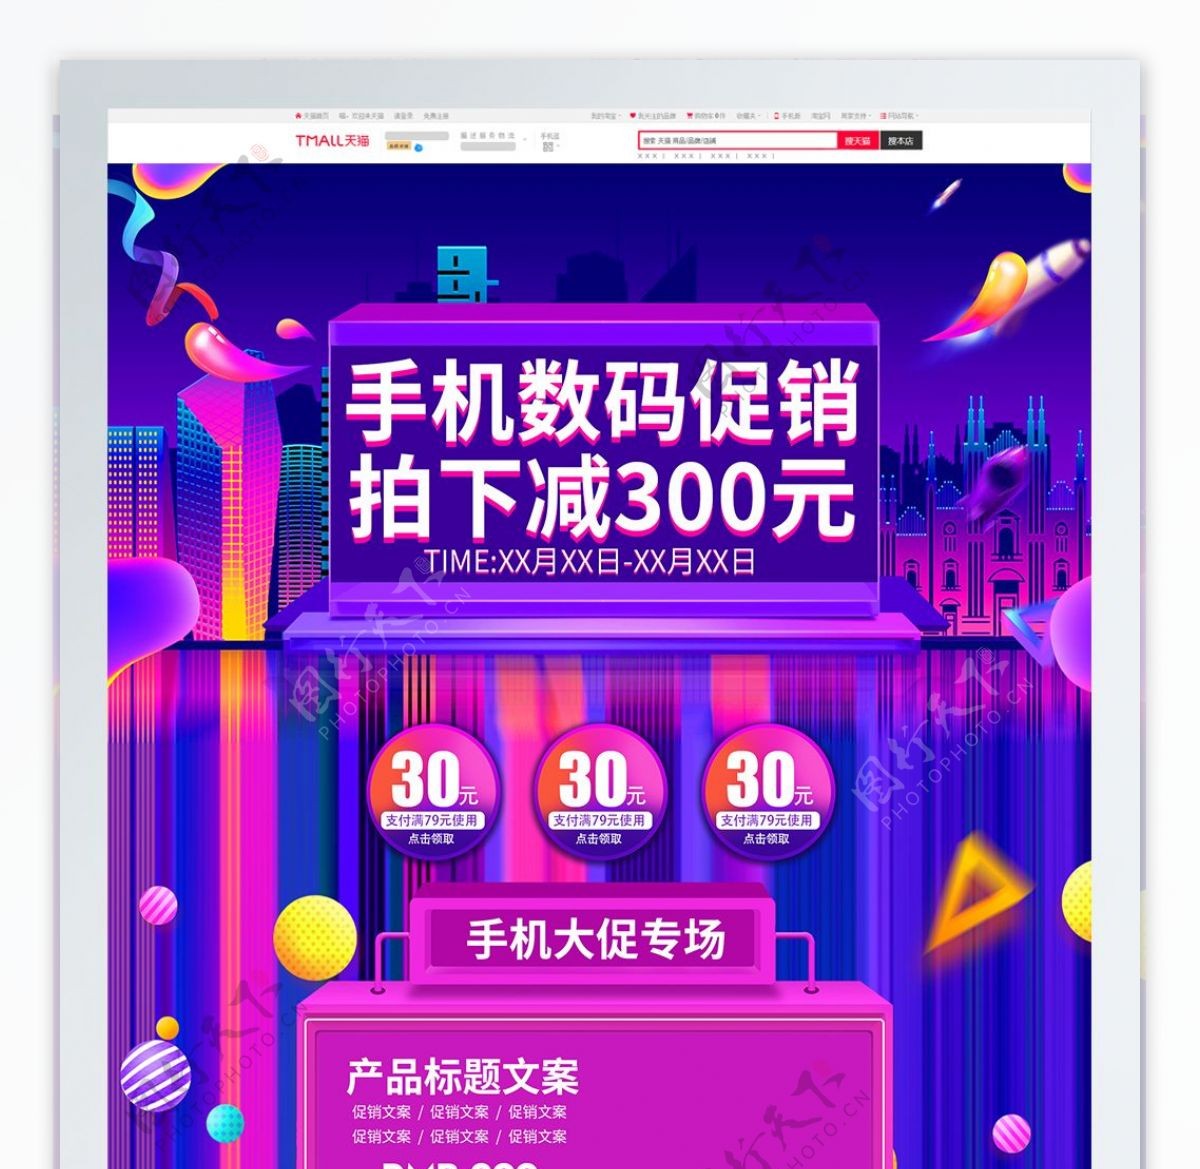 紫色炫酷欧普风手机数码首页促销电商模板